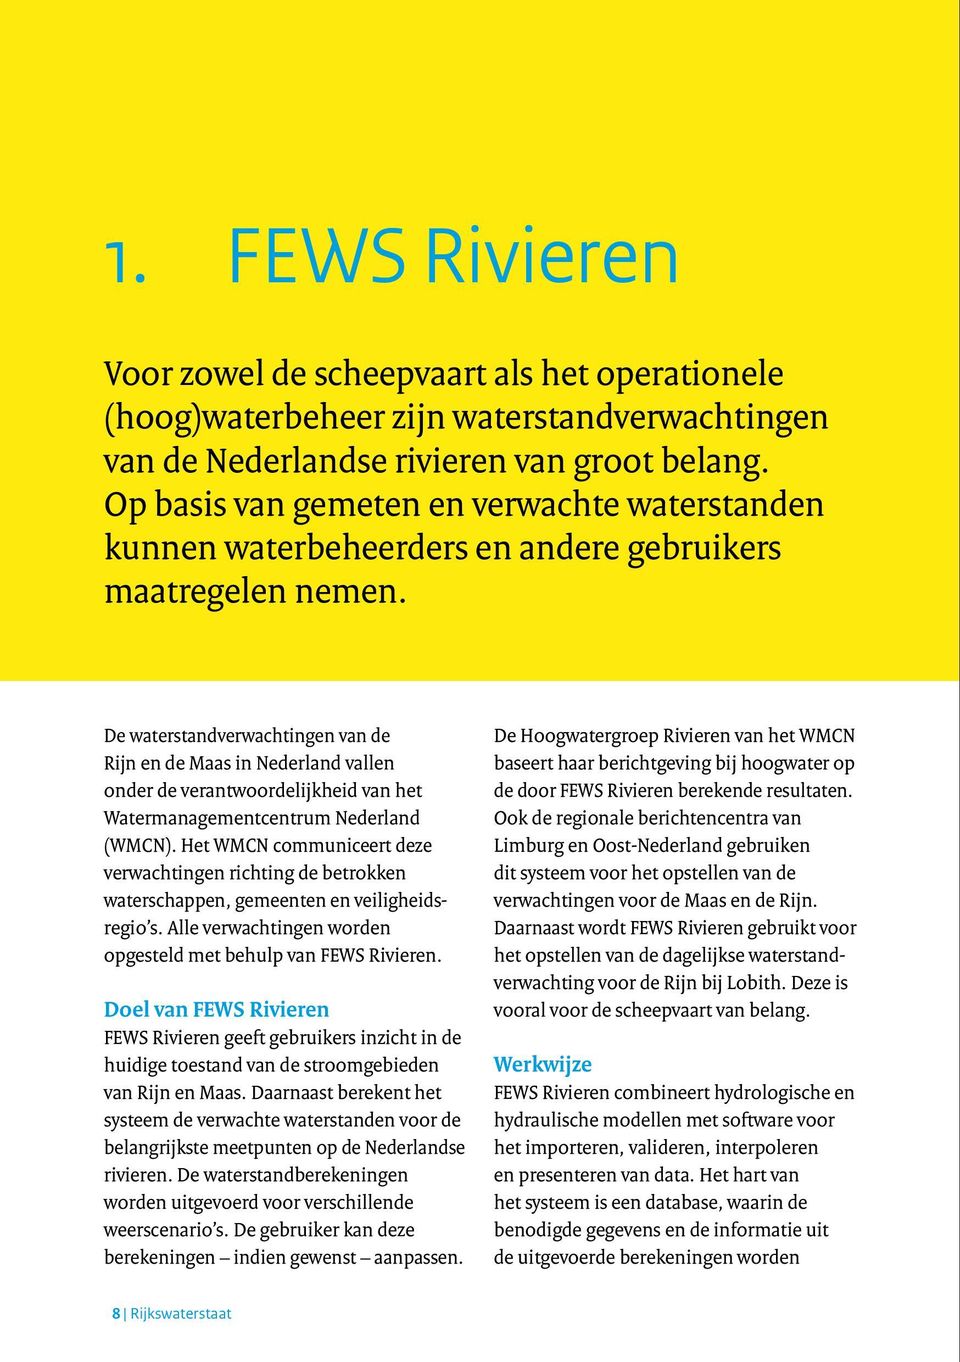 De waterstandverwachtingen van de Rijn en de Maas in Nederland vallen onder de verantwoordelijkheid van het Watermanagementcentrum Nederland (WMCN).